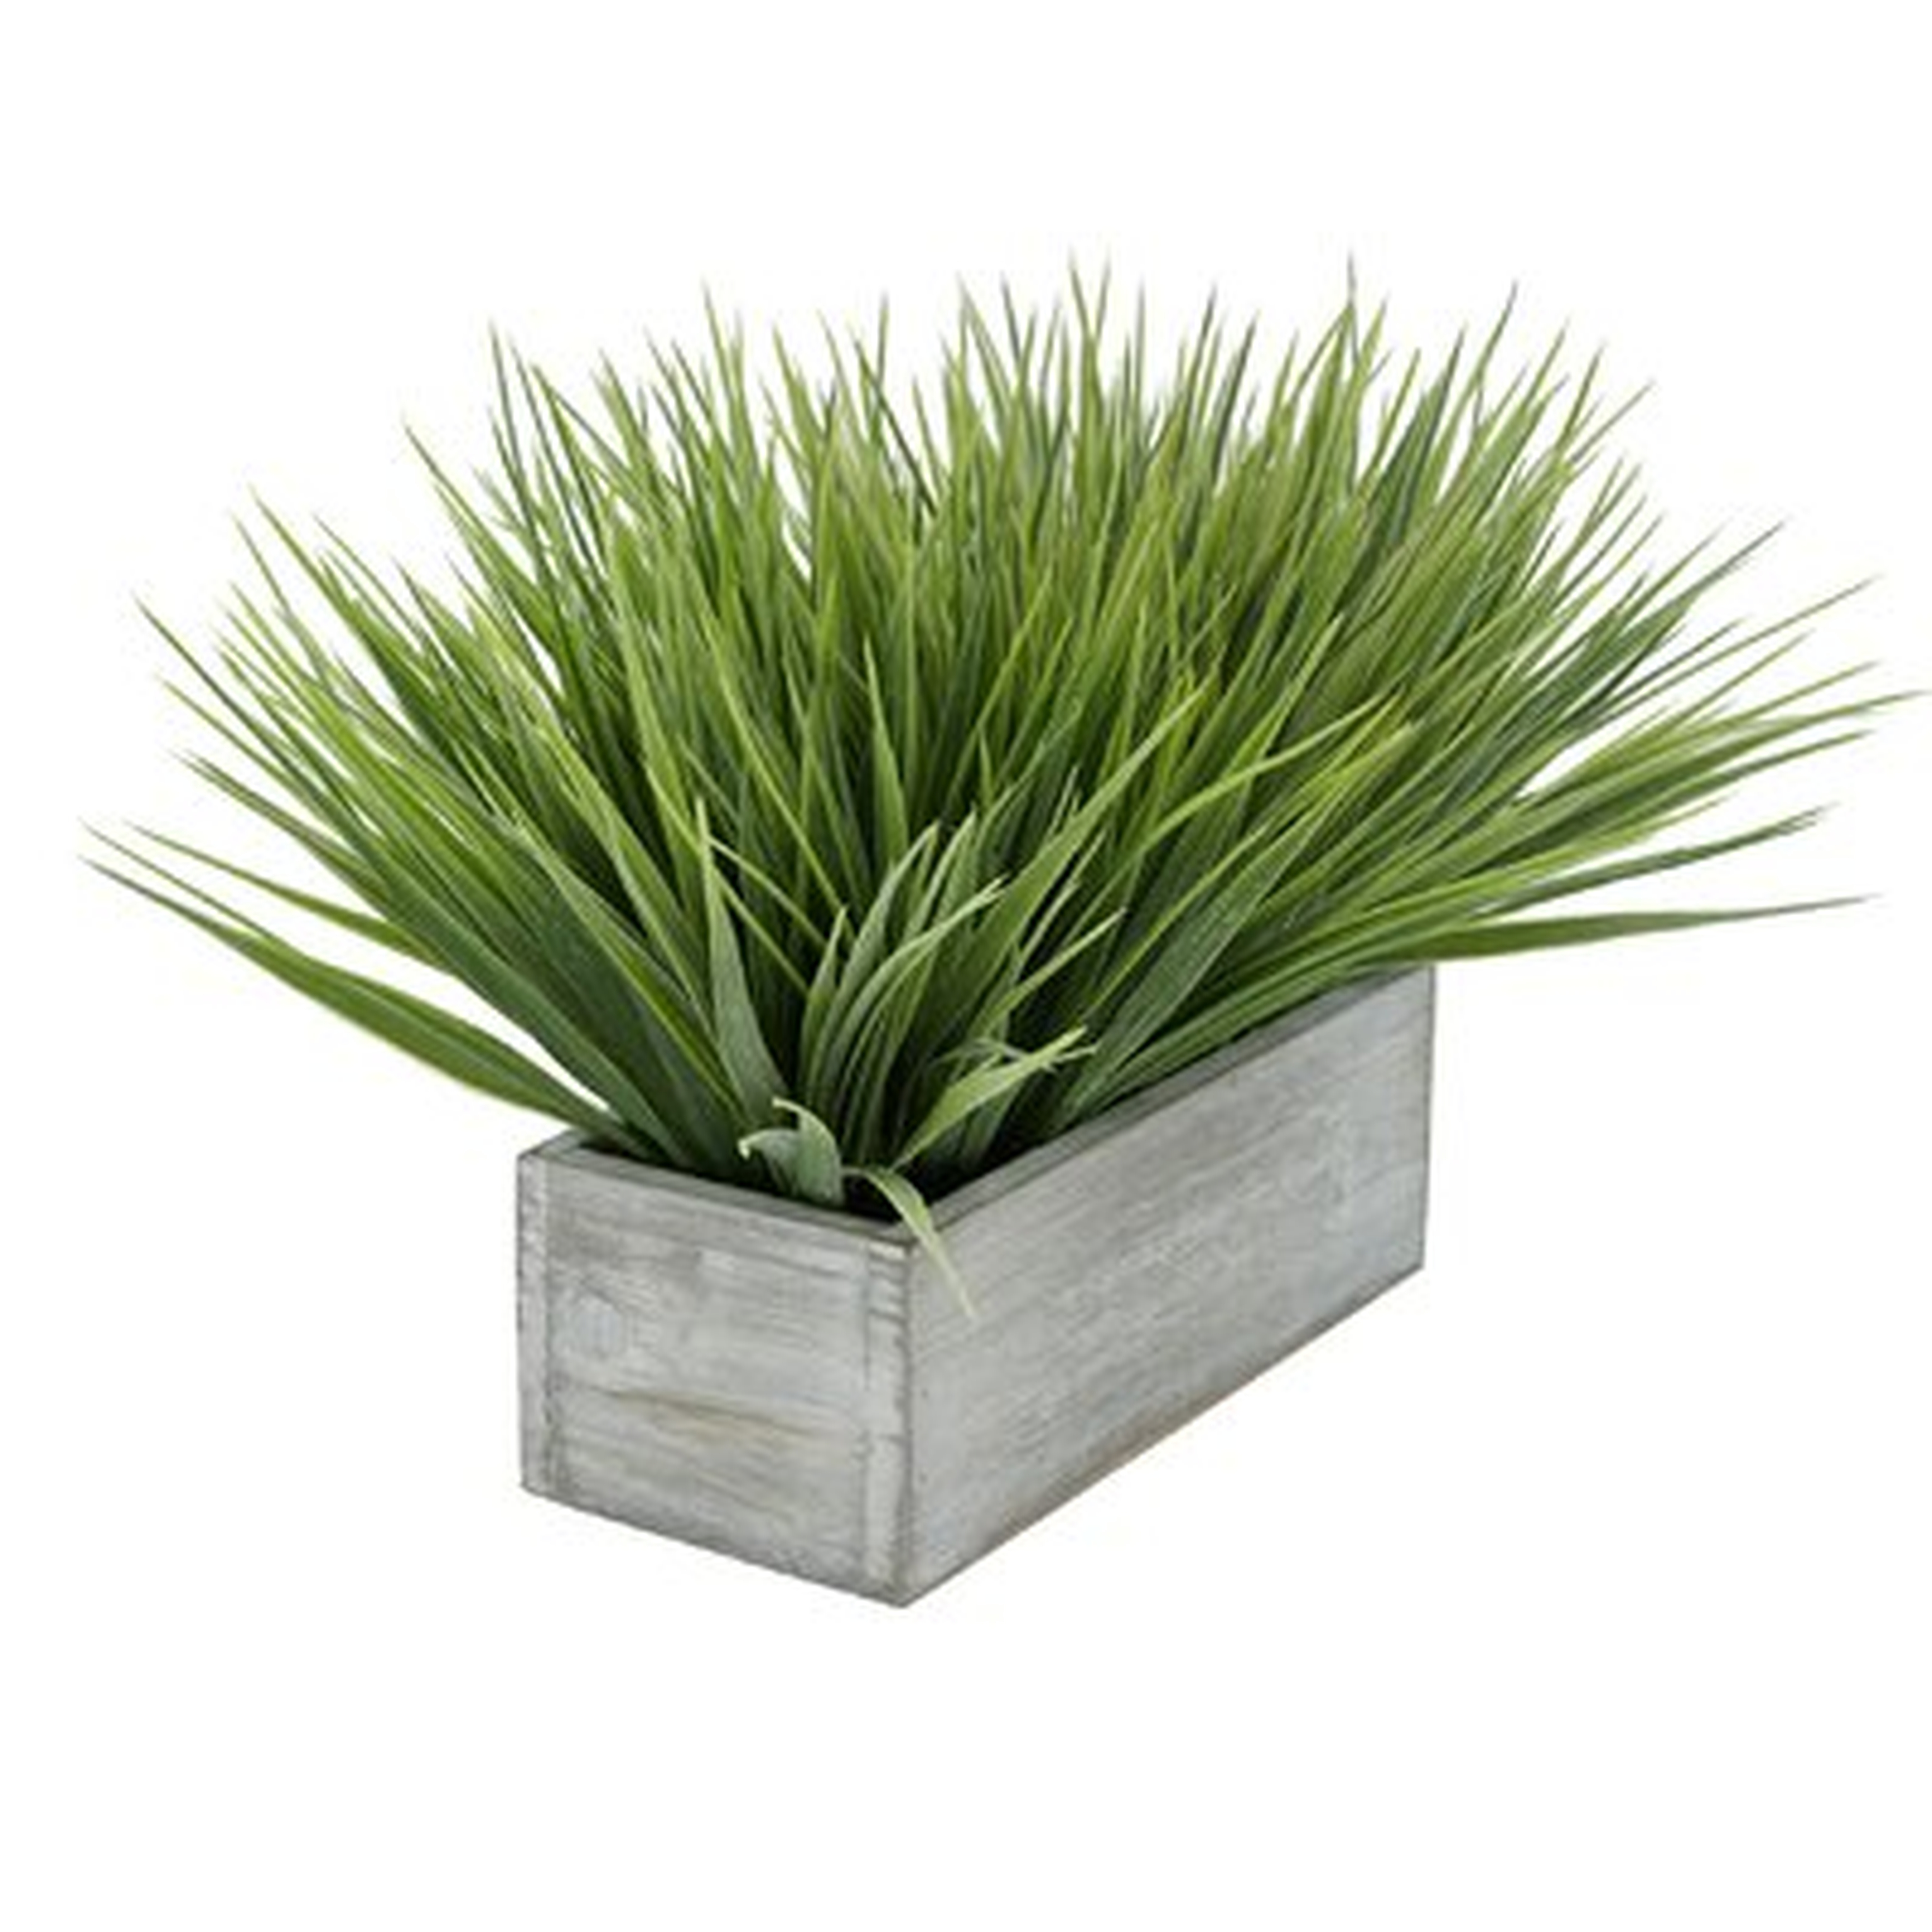 Artificial Onion Grass in Planter - Wayfair